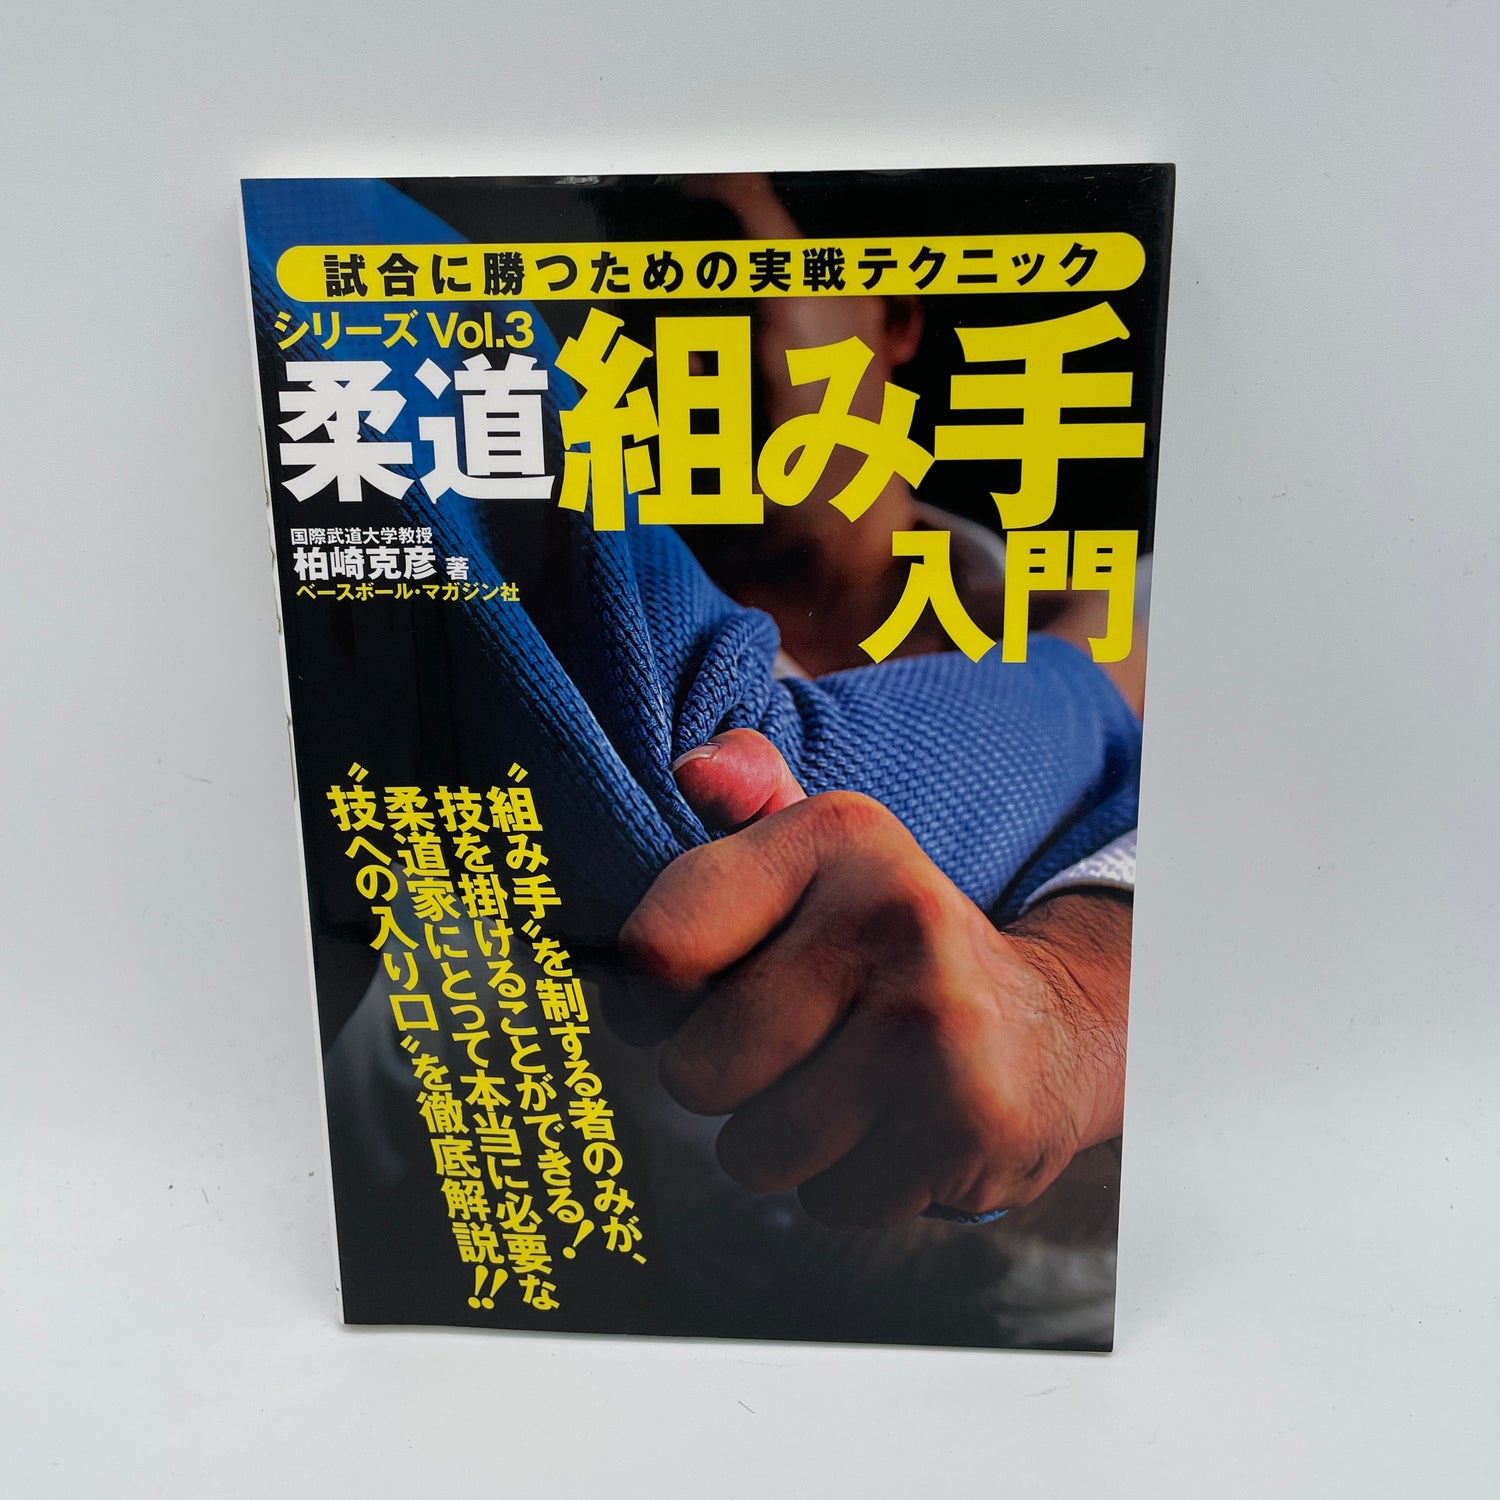 柔道競技シリーズ Book 3: グリップ入門 柏崎 克彦 (中古)